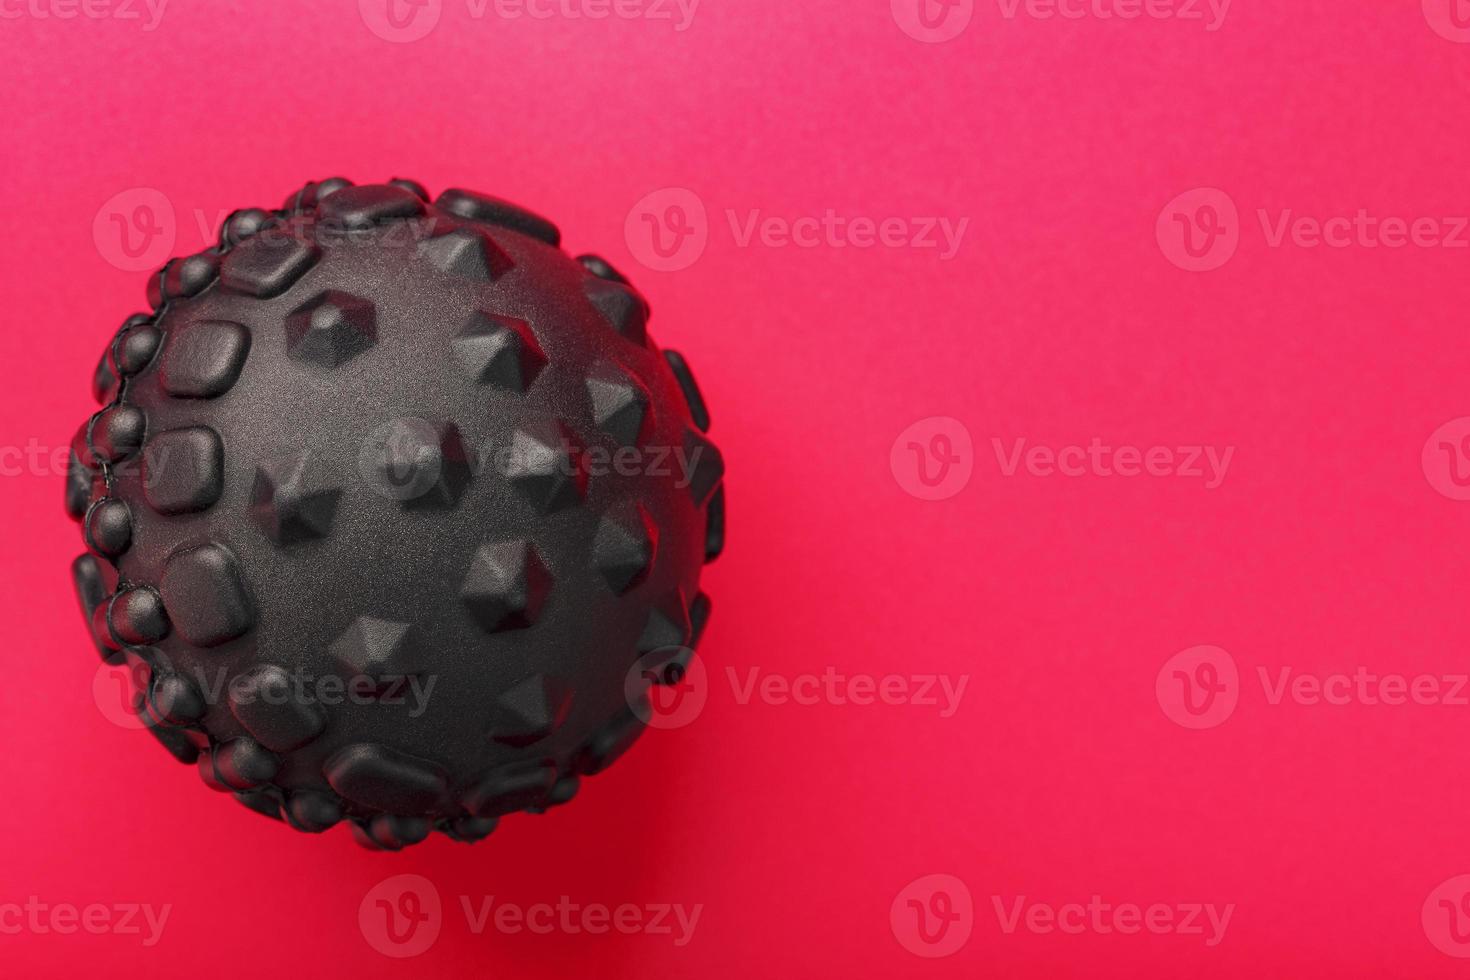 Black lumpy foam body massage ball on red background. photo